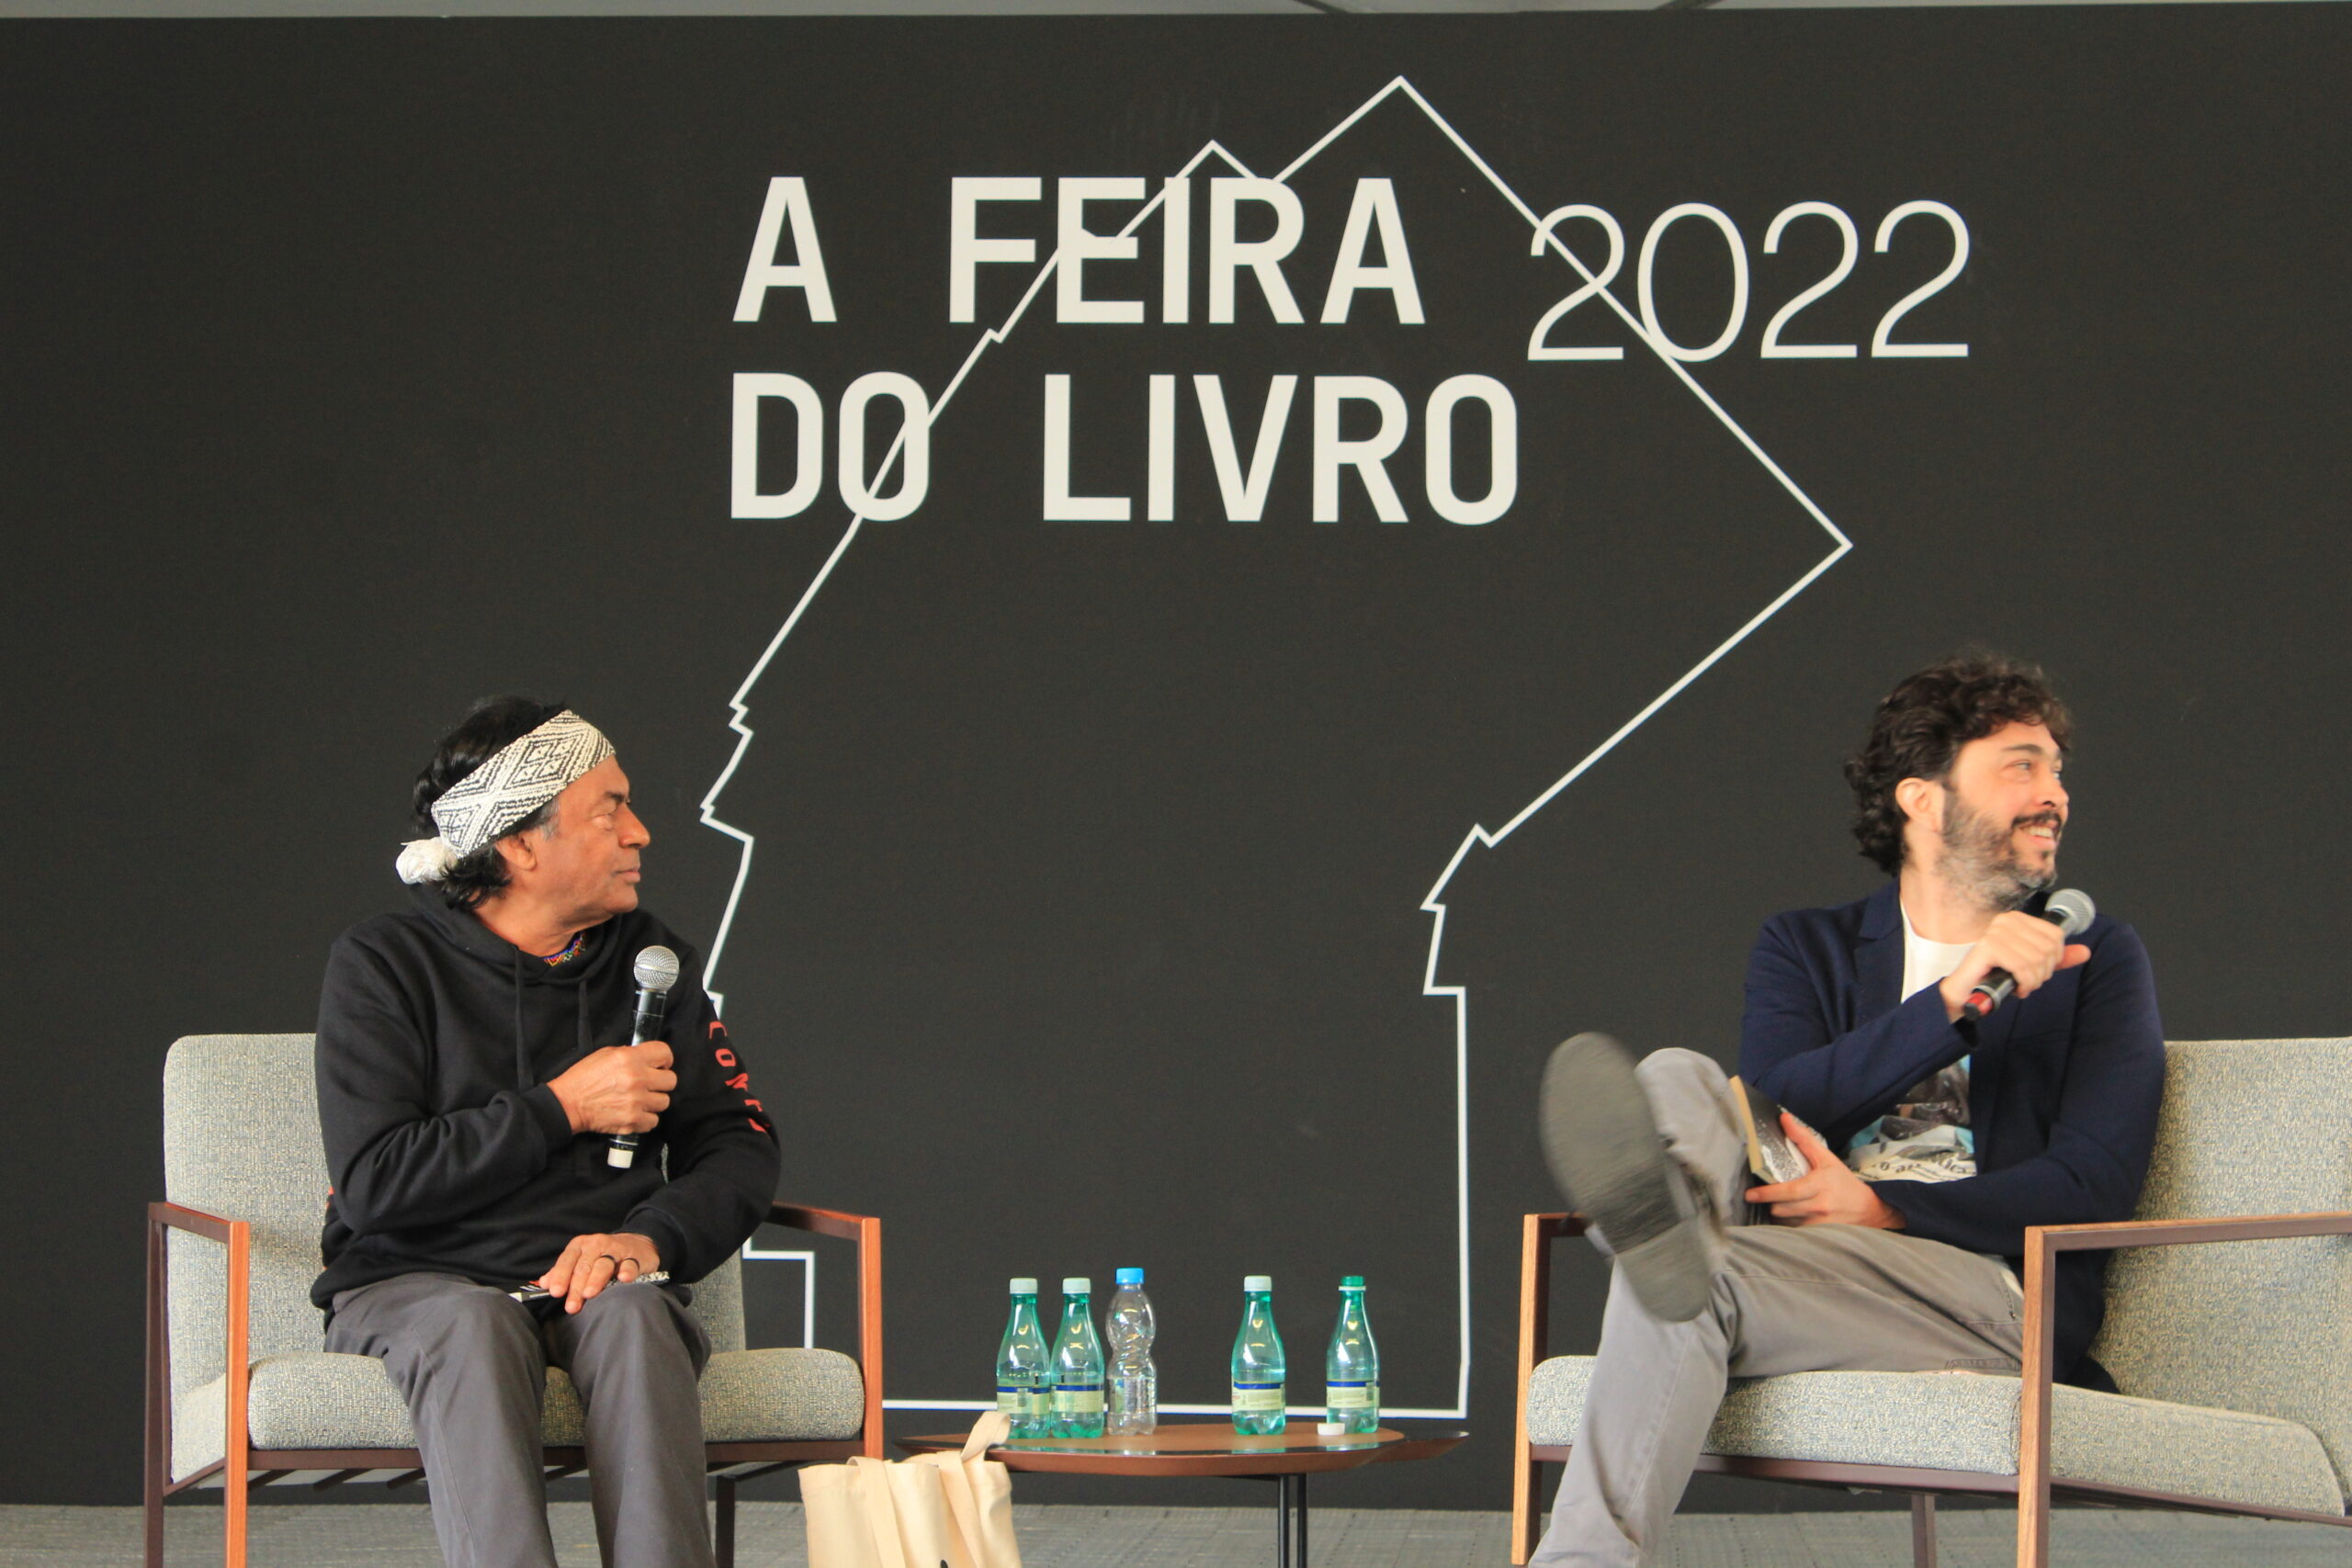 Ailton Krenak está à esquerda da foto, sentado, com um microfone na mão. Paulo Weneck está à direita, também sentado com um microfone, olhando sobre o ombro. Os dois discutem sobre patrimônio em um painel da Feira do Livro no Pacaembu, em São Paulo.